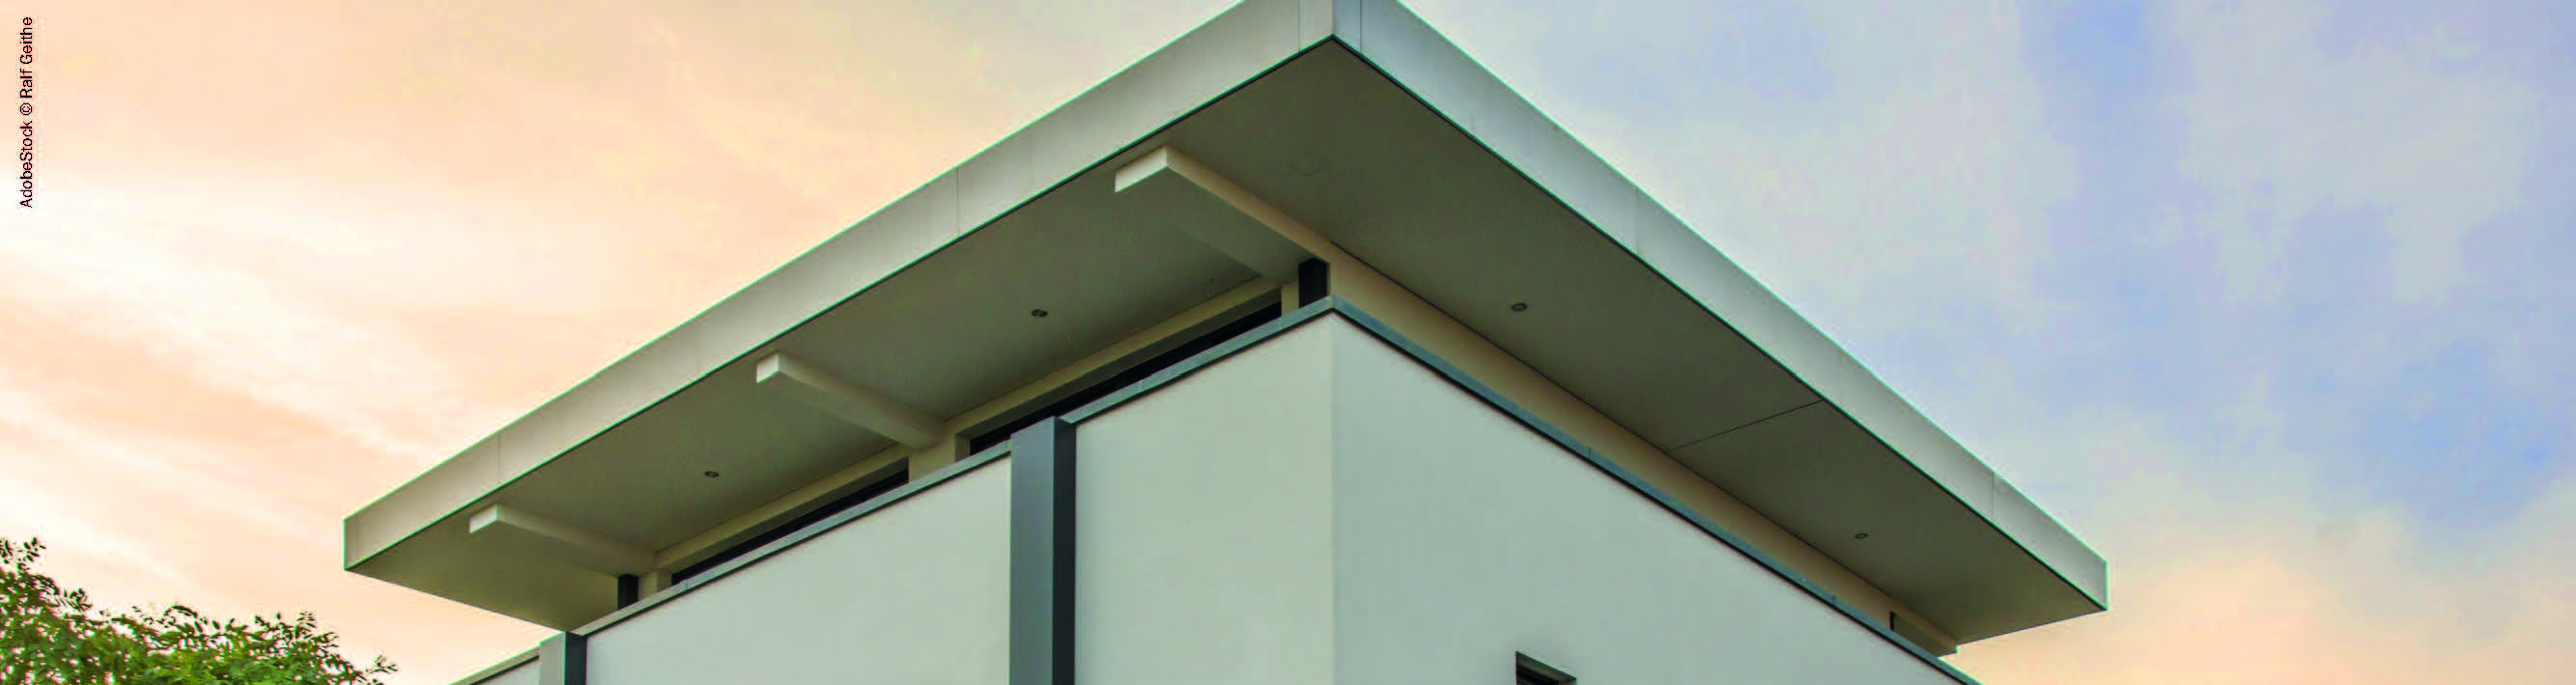 Einblasdämmsystem für Fassade und Dach - Ecofibre Dämmstoffe